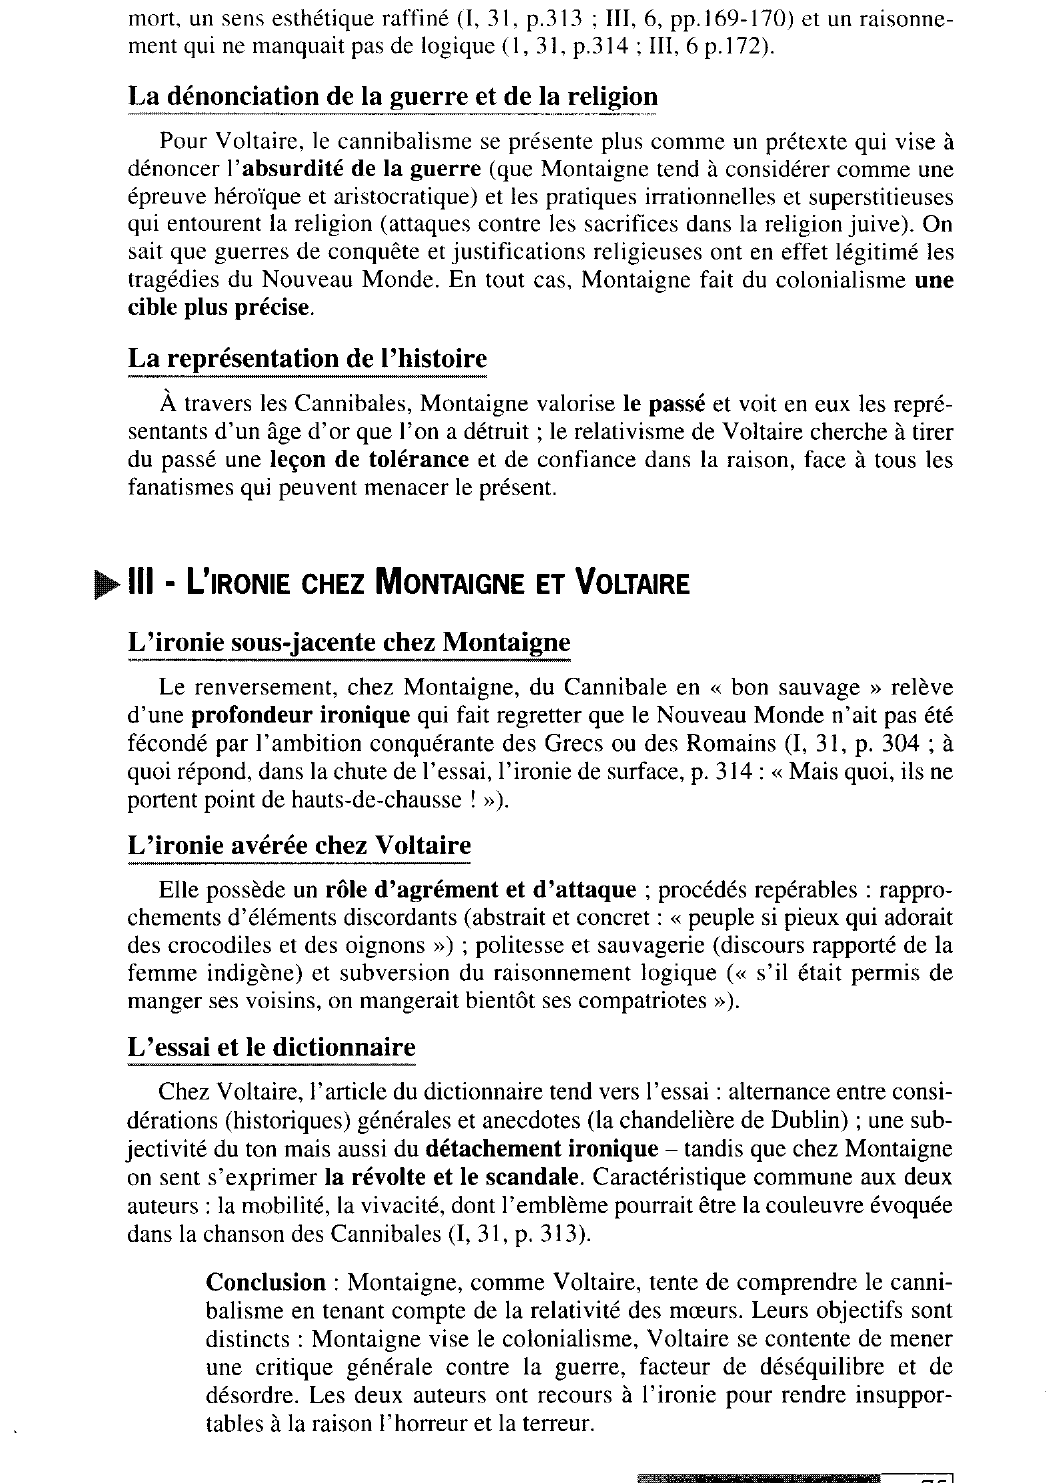 Prévisualisation du document Les « Cannibales » de Montaigne et les « Anthropophages » de Voltaire